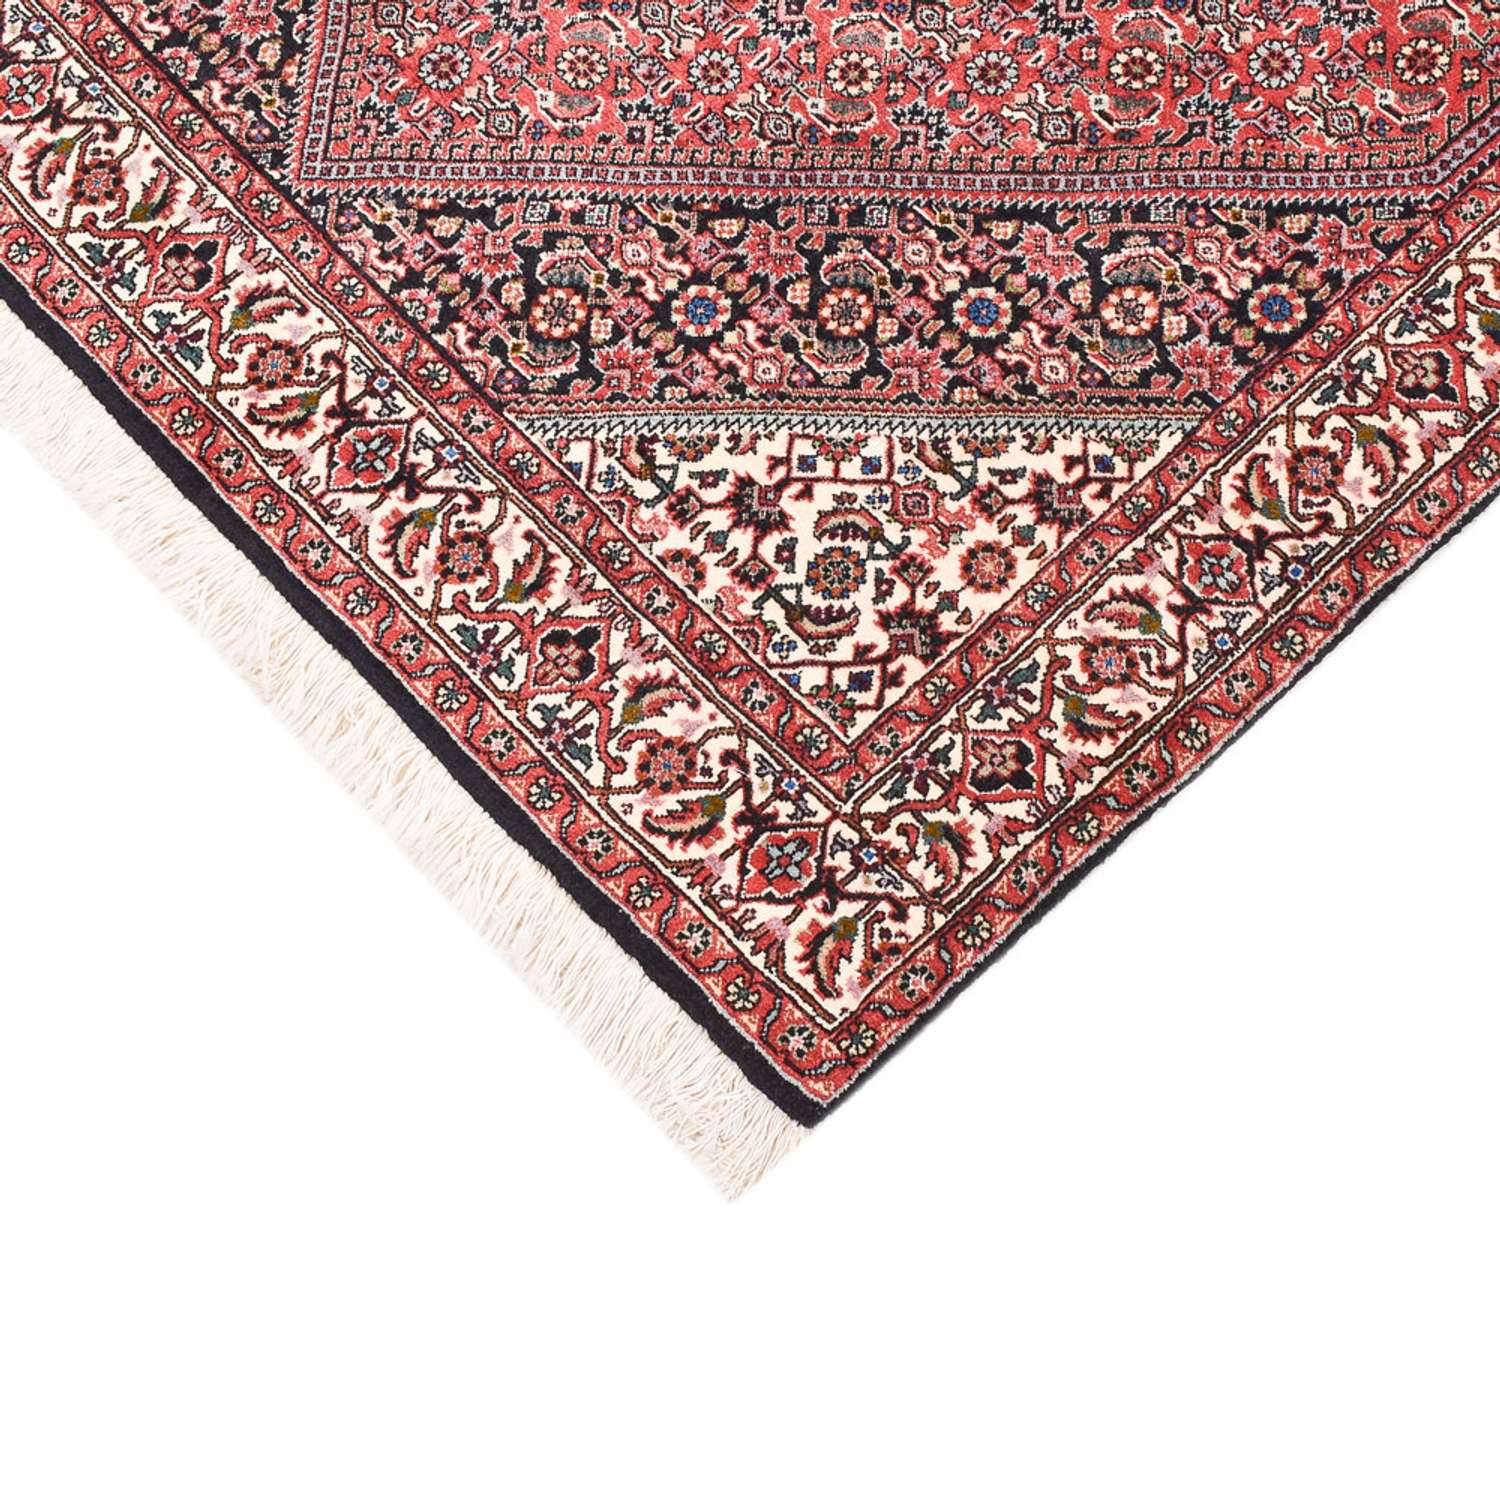 Tapis persan - Bidjar - 156 x 110 cm - rouge clair